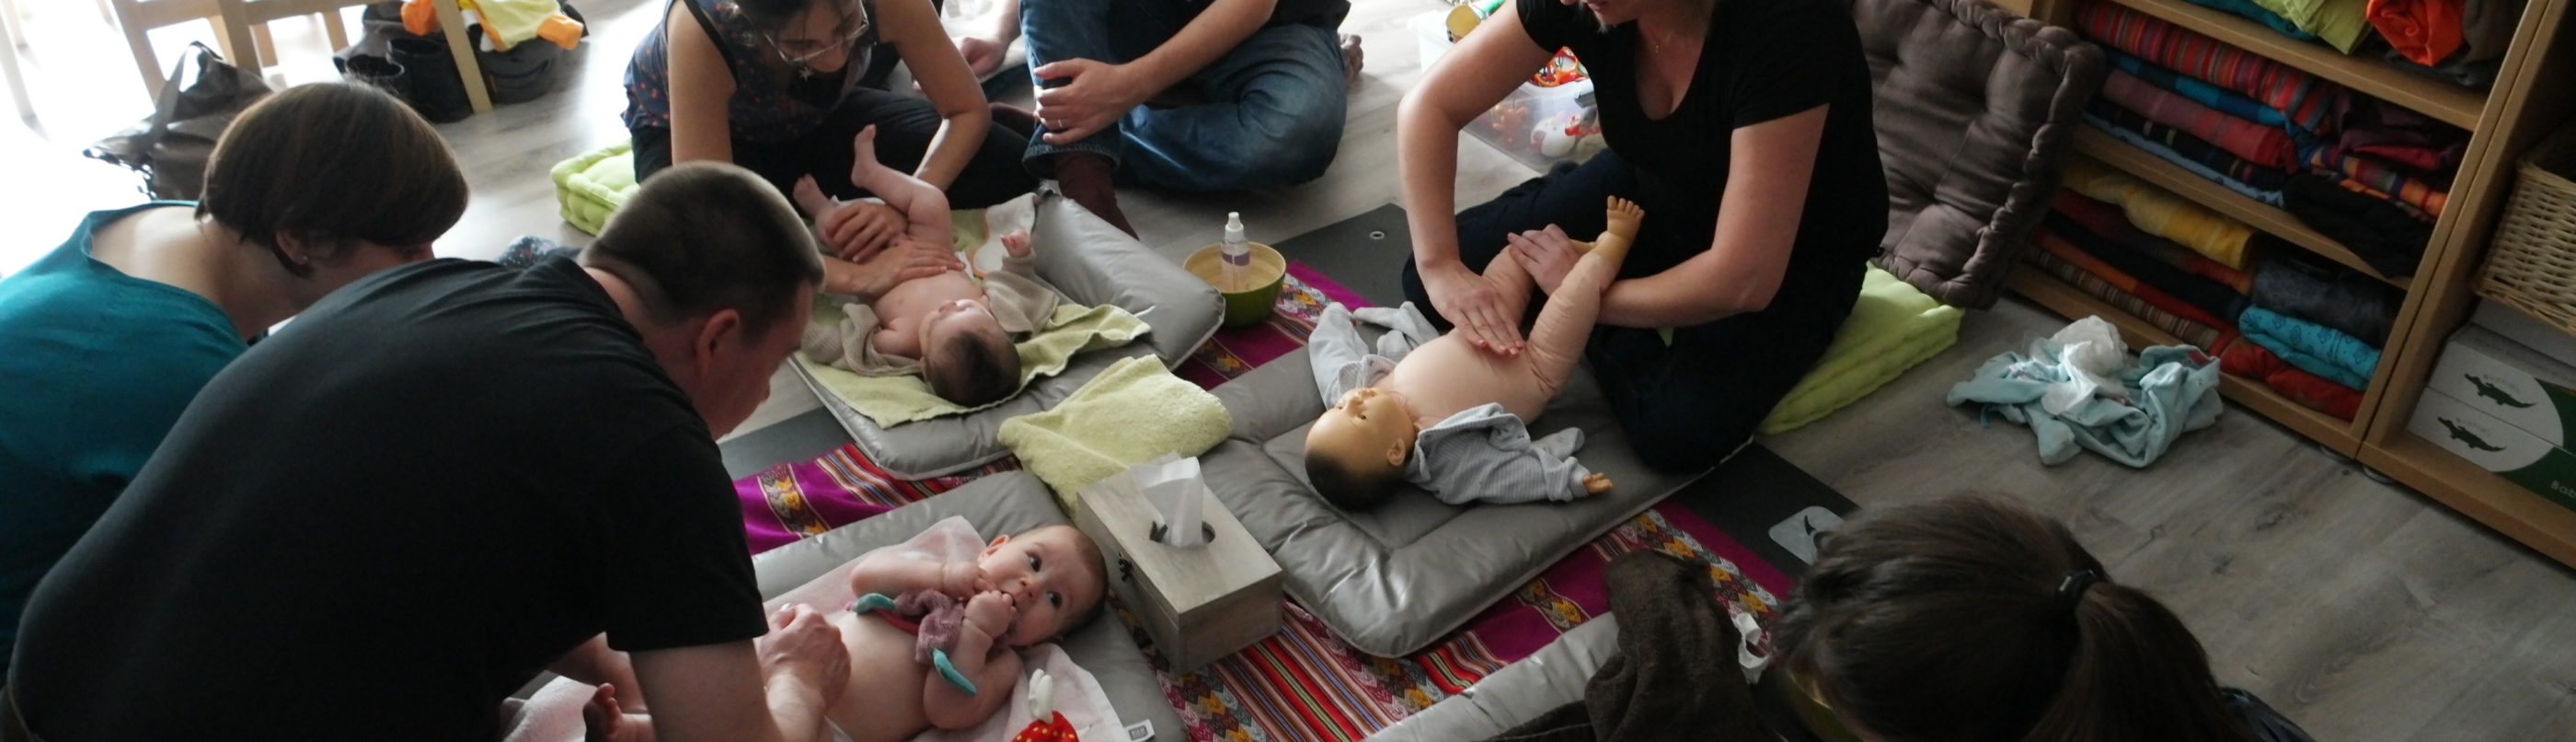 Atelier massage bébé, Nancy, Meurthe-et-Moselle